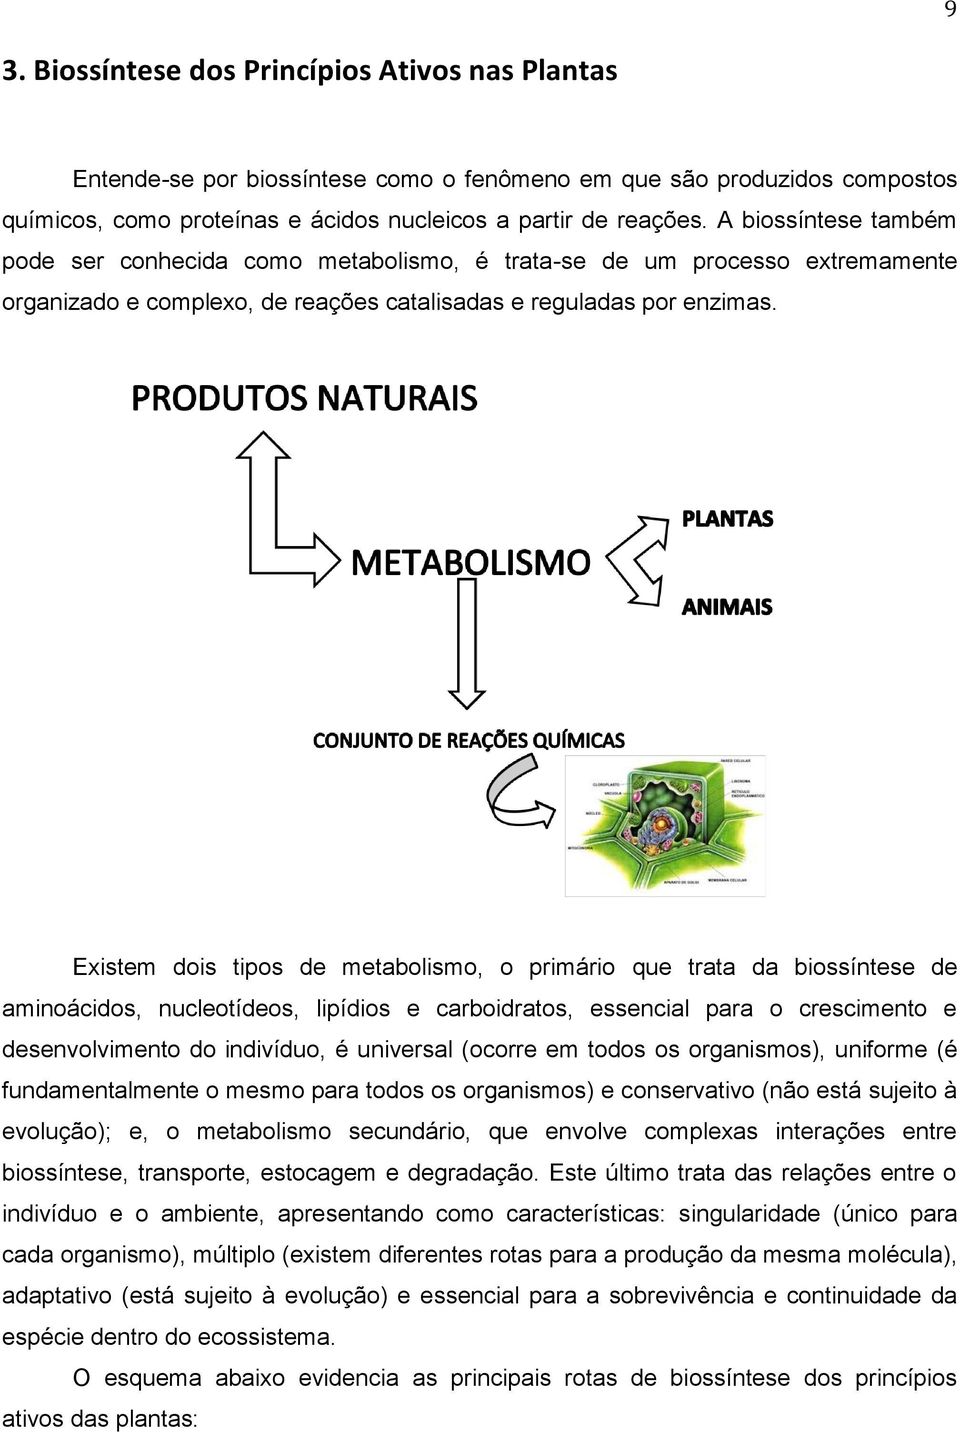 Existem dois tipos de metabolismo, o primário que trata da biossíntese de aminoácidos, nucleotídeos, lipídios e carboidratos, essencial para o crescimento e desenvolvimento do indivíduo, é universal